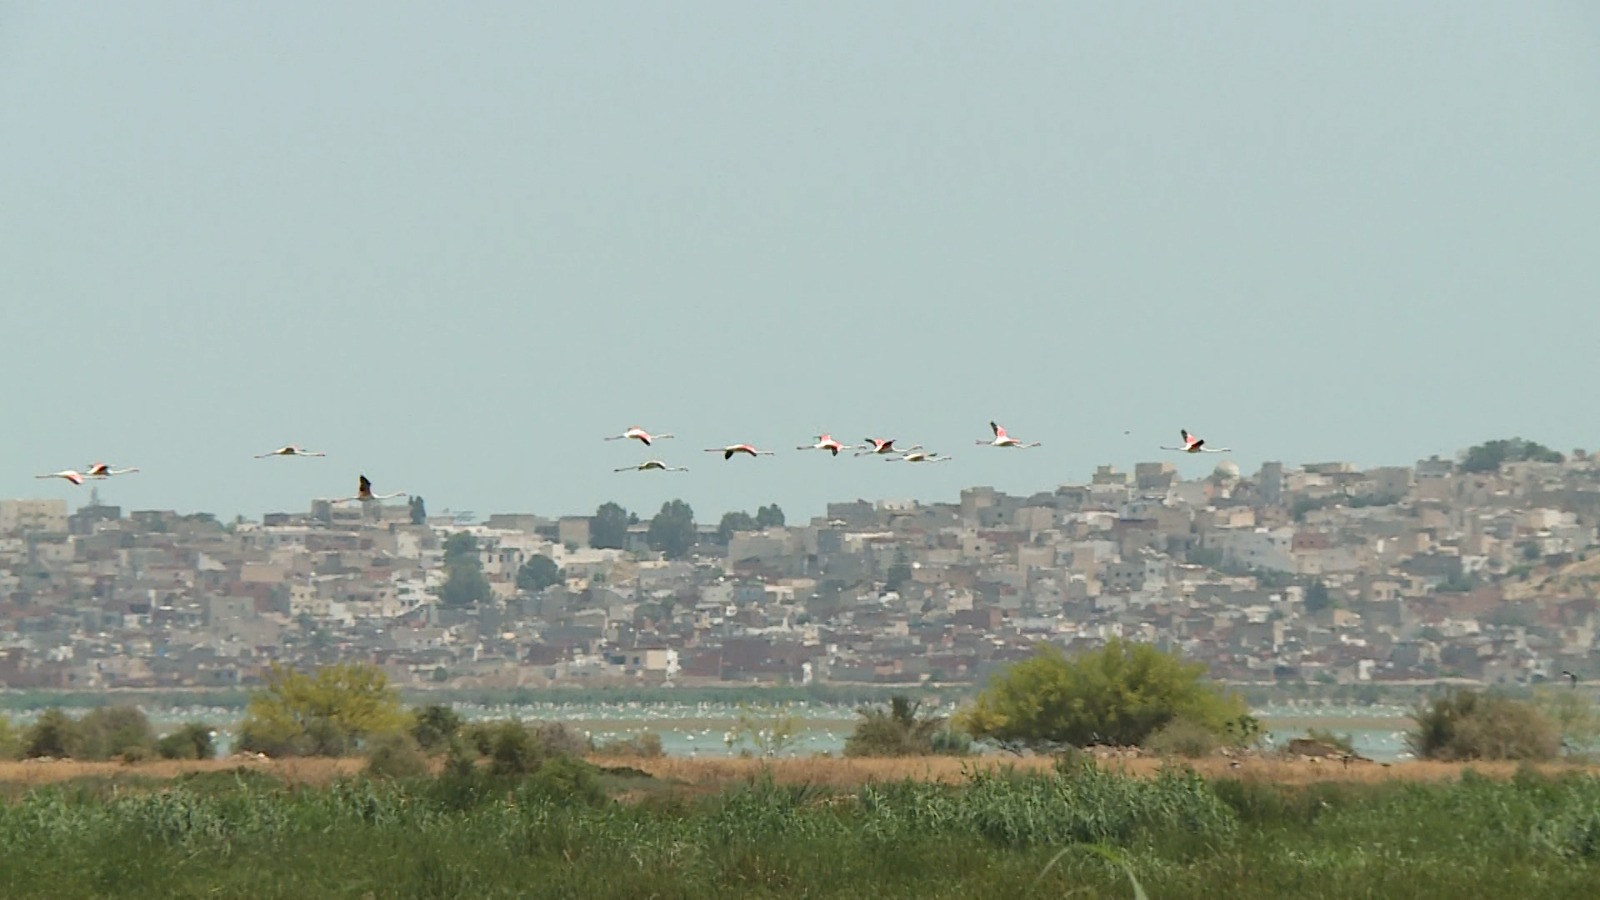 طيور 'الفلامنجو' تُحلق فوق إحدى المسطحات المائية التونسية بعد رحلة هجرة طويلة